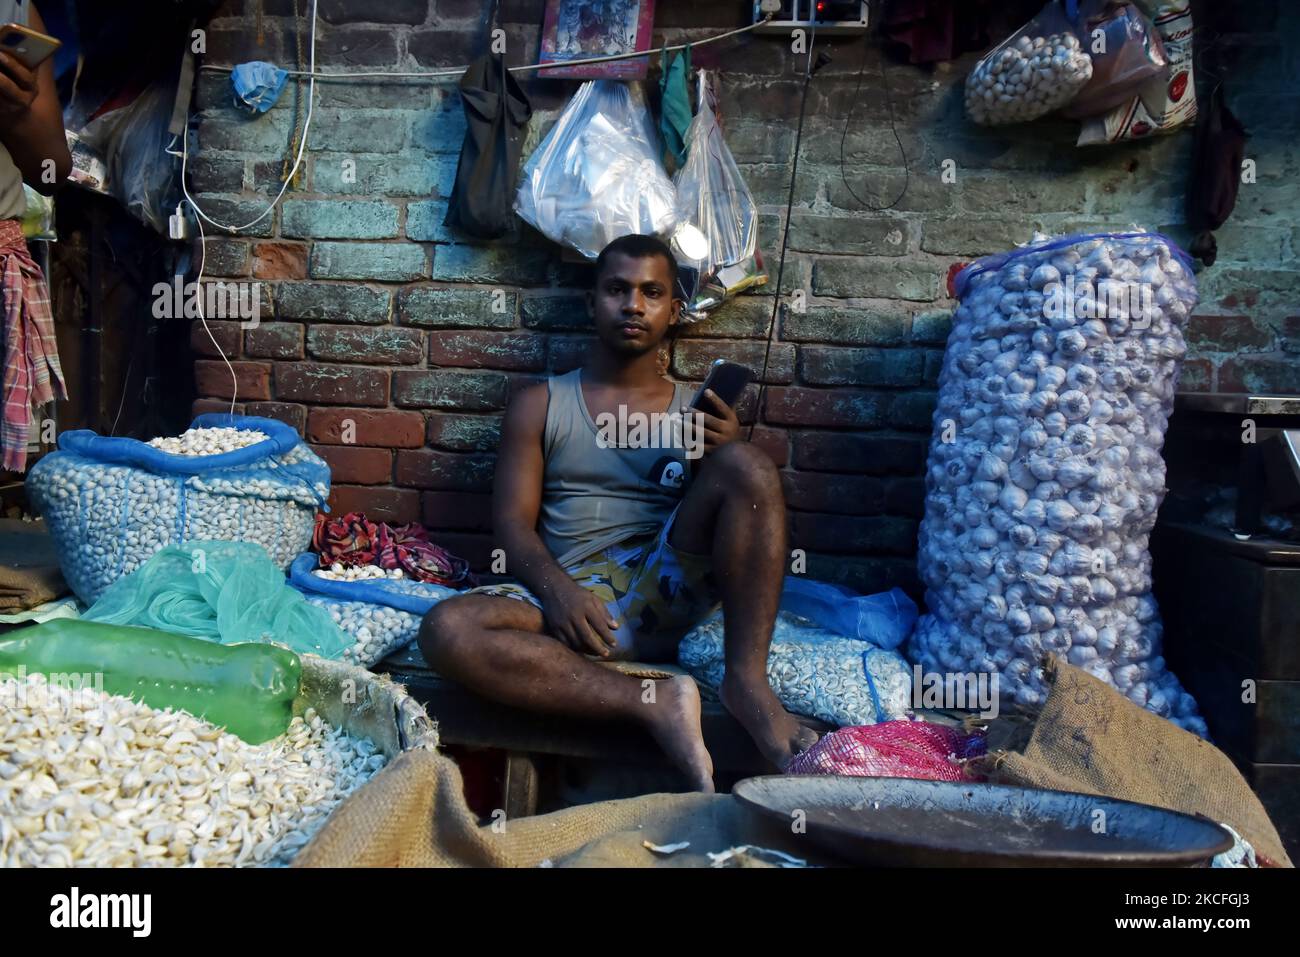 Ein Gemüseverkäufer schaut in die Kamera auf einem Gemüsemarkt in Kalkutta, Indien, 02. Juni 2021. Indien bereitet derzeit ein Konjunkturpaket für Sektoren vor, die am stärksten von einer tödlichen Coronavirus-Welle betroffen sind, und zielt darauf ab, eine Wirtschaft zu unterstützen, die mit einer Reihe örtlich begrenzter Sperrungen zu kämpfen hat, sagten Leute, die mit der Angelegenheit vertraut sind. Laut einem indischen Medienbericht arbeitet das Finanzministerium an Vorschlägen zur Stärkung der Tourismus-, Luftfahrt- und Gastgewerbe sowie kleiner und mittlerer Unternehmen. (Foto von Indranil Aditya/NurPhoto) Stockfoto